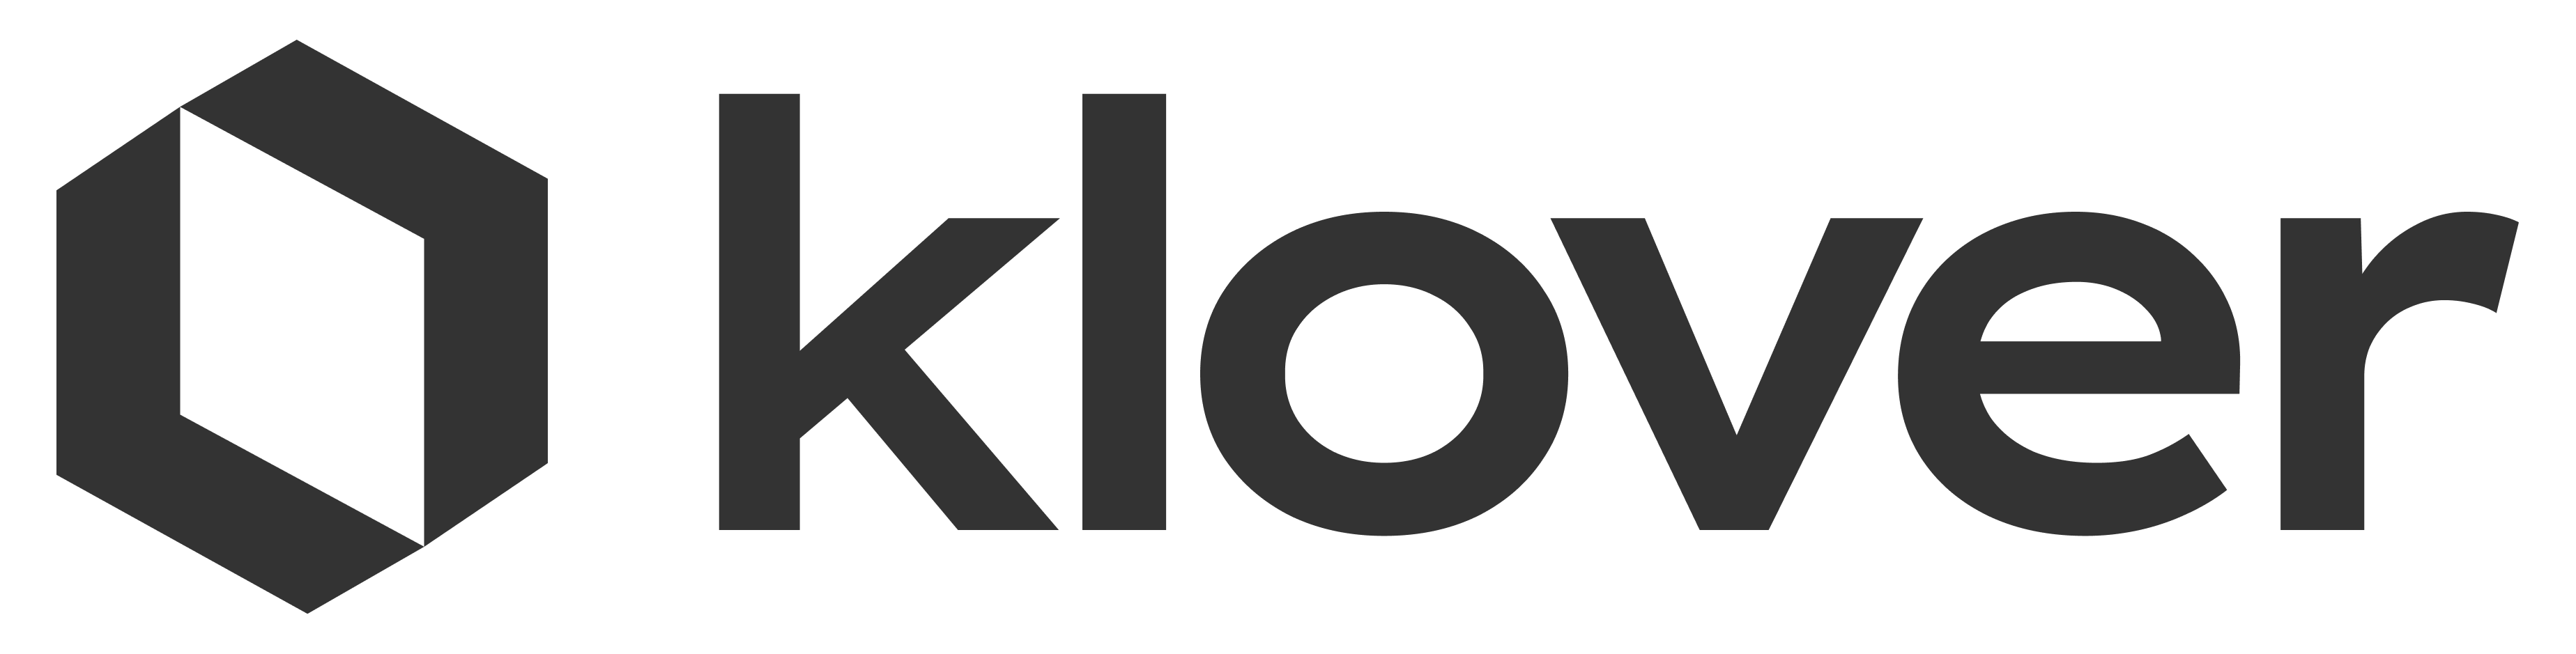 Klover Logo